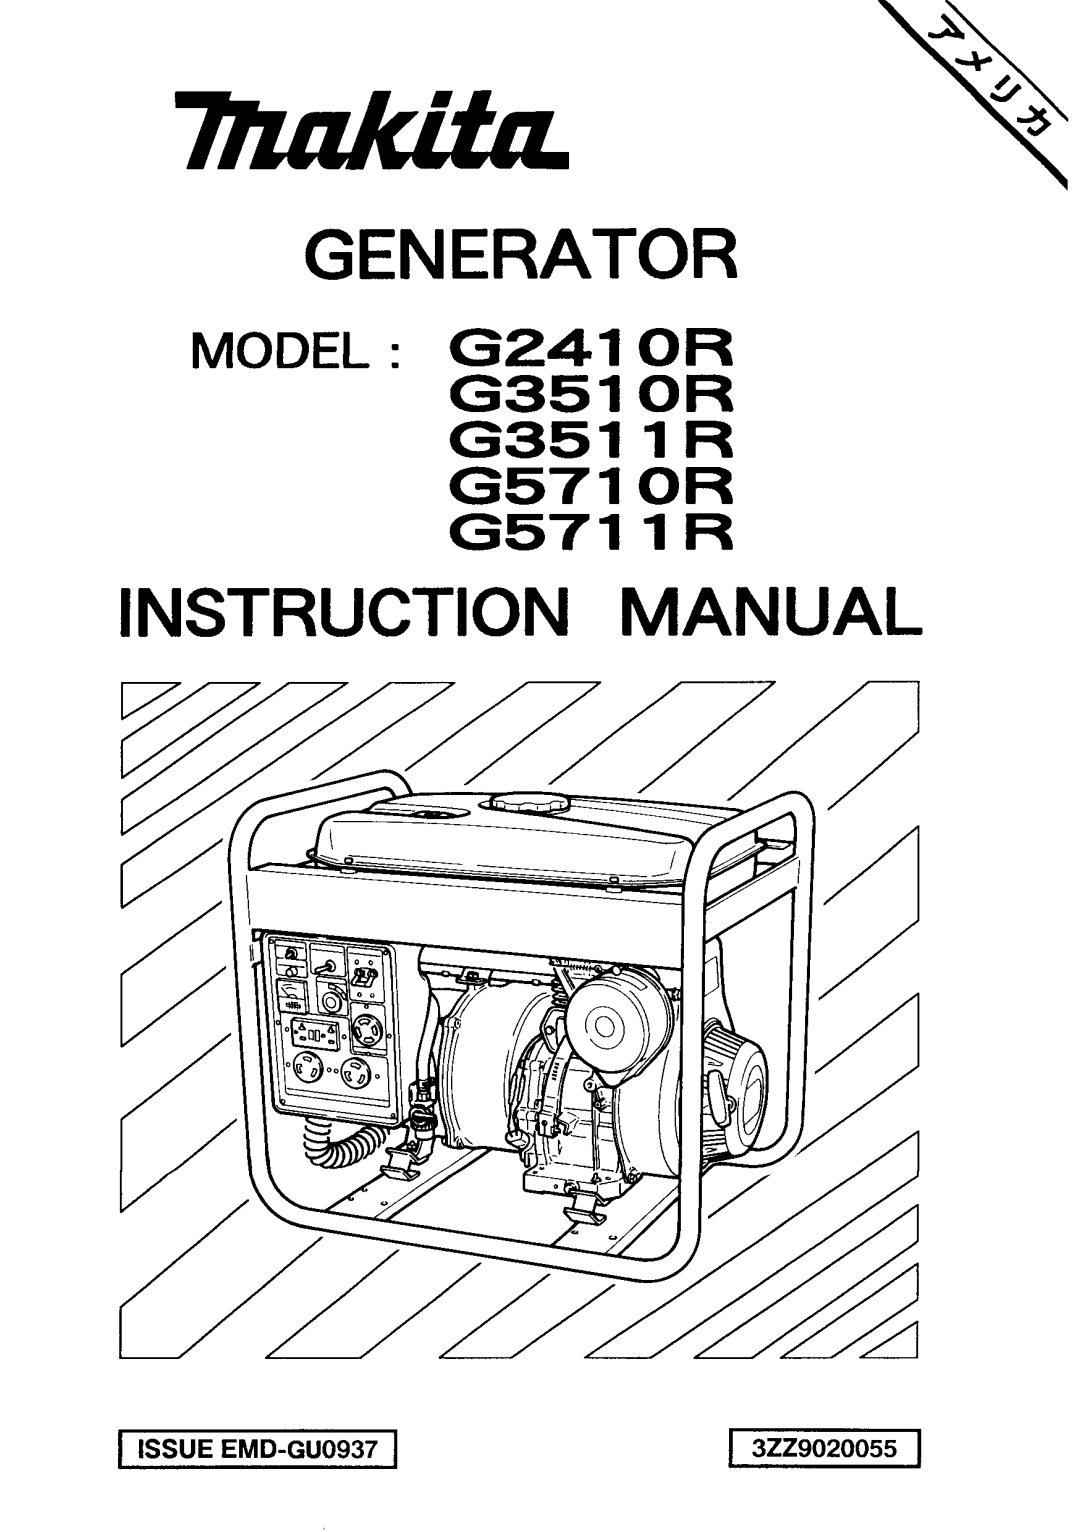 Makita manual MODEL G341O R G351O R G3511R G571O R G5711R, Generator 